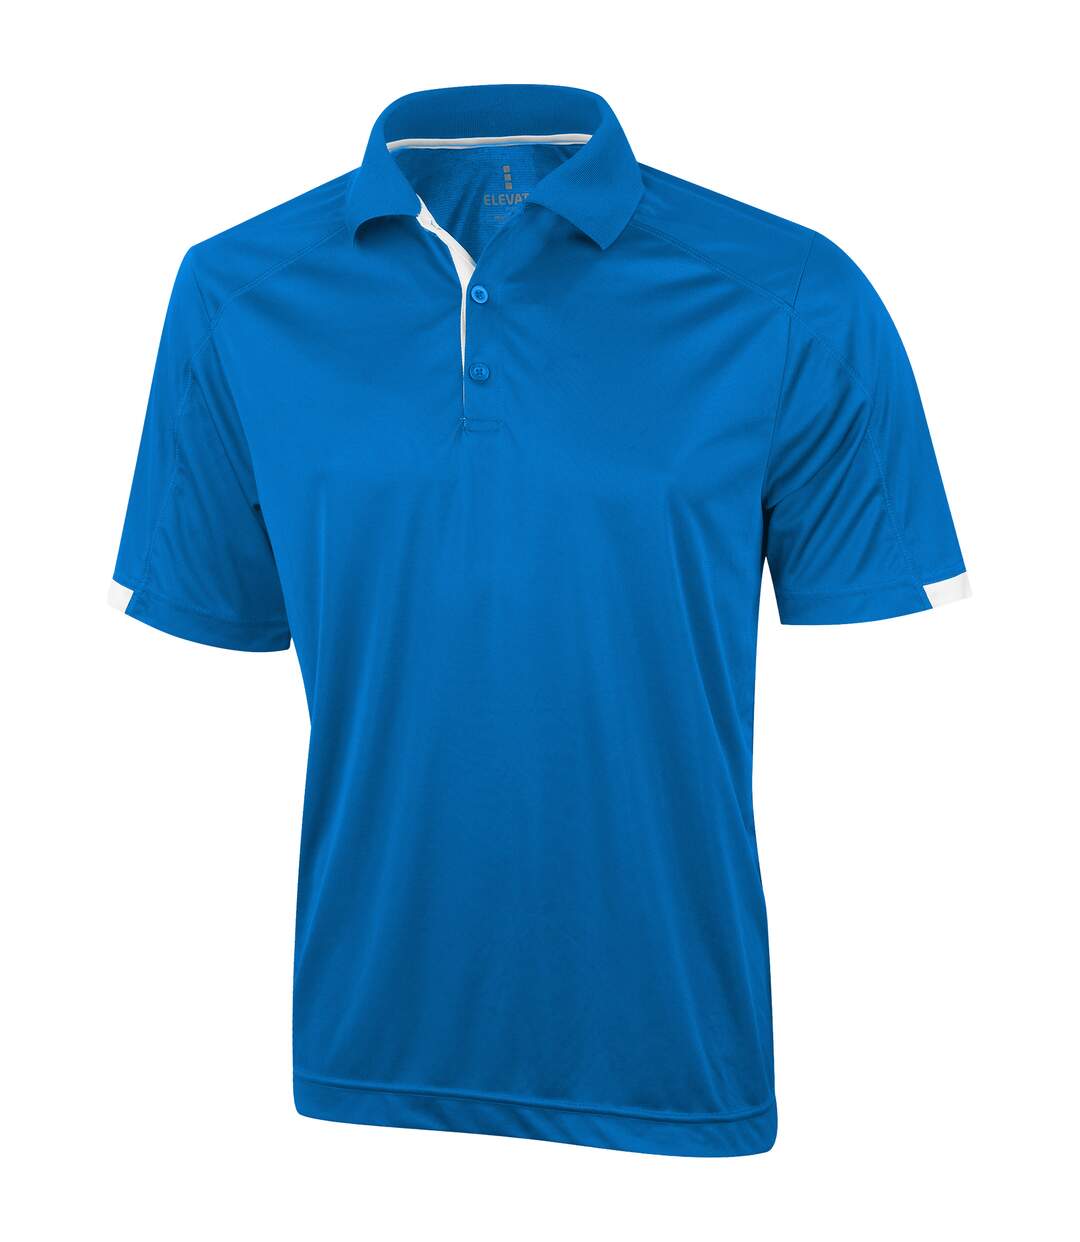 Elevate Mens Kiso Short Sleeve Polo (Pack of 2) (Blue) - UTPF2499